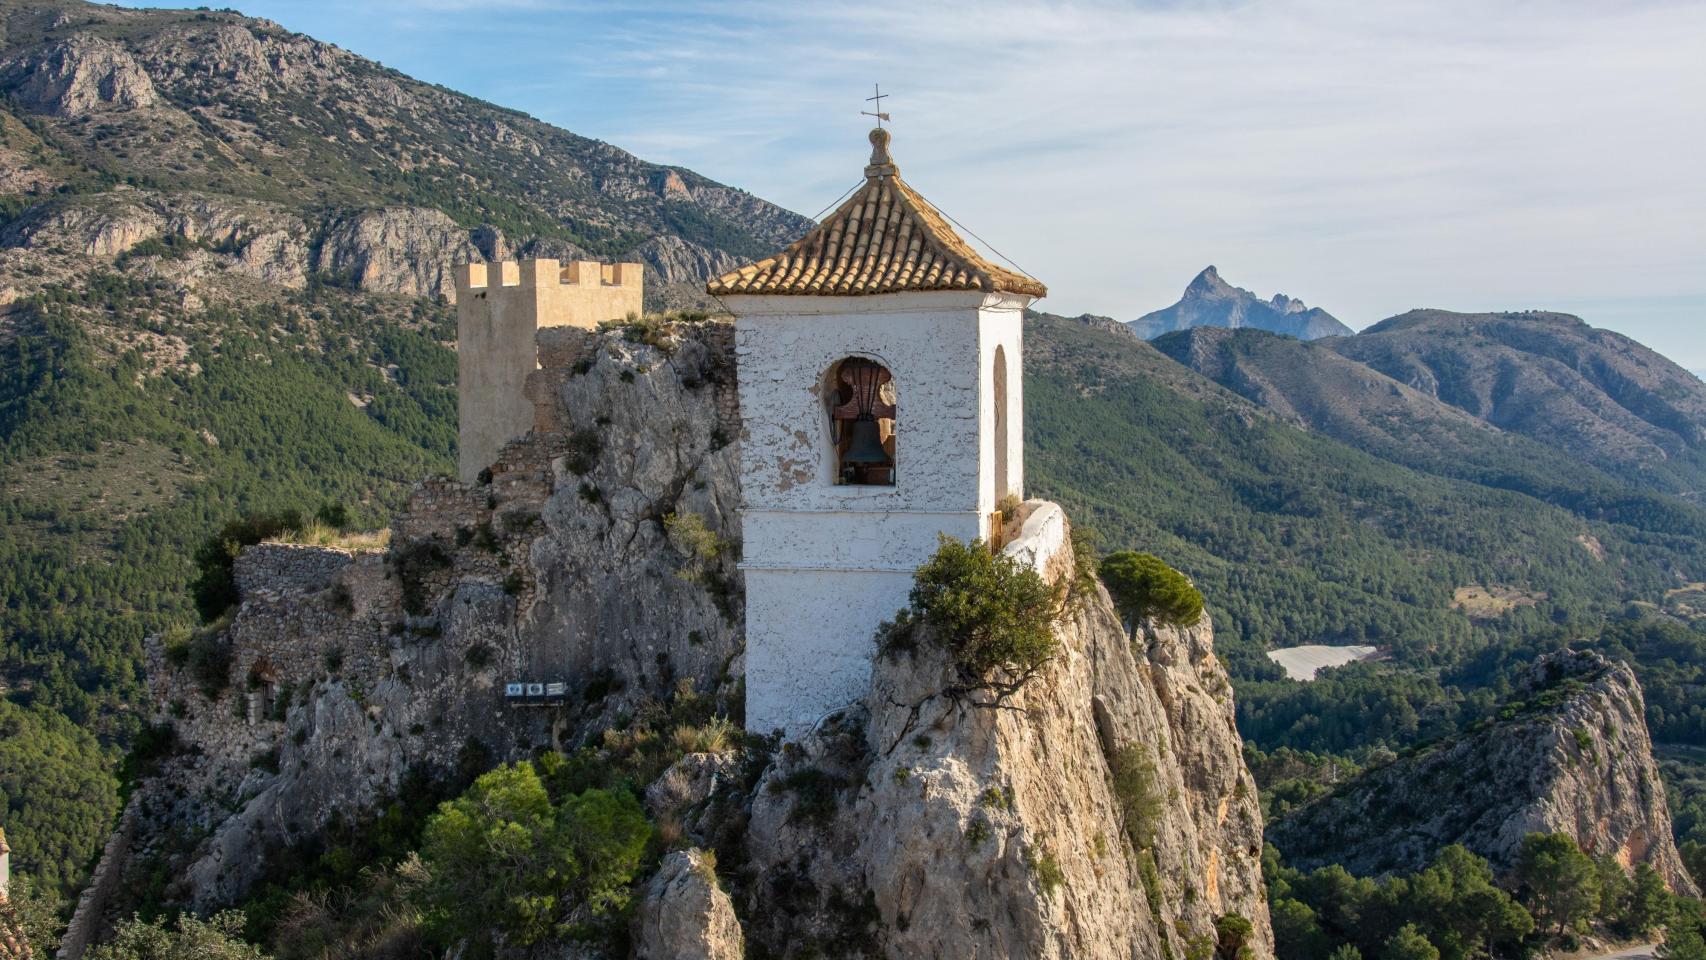 Desde el balcón de la casa rural se puede ver el castillo de Guadalest.